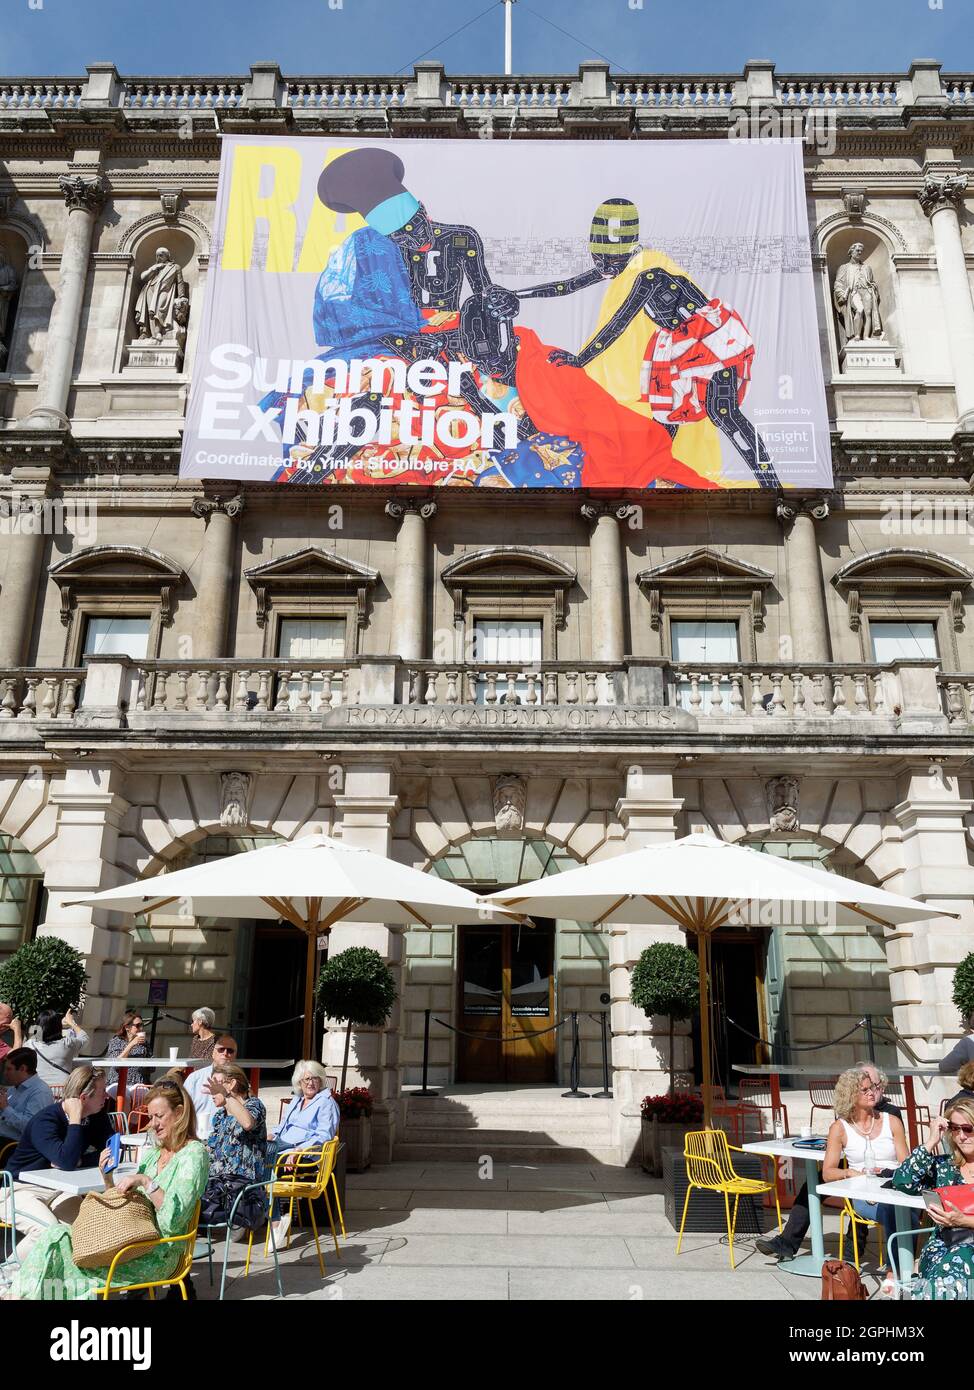 Londres, Grand Londres, Angleterre, 21 septembre 2021 : personnes assises à l'extérieur dans un café de l'Académie royale des arts pendant une exposition d'été. Banque D'Images